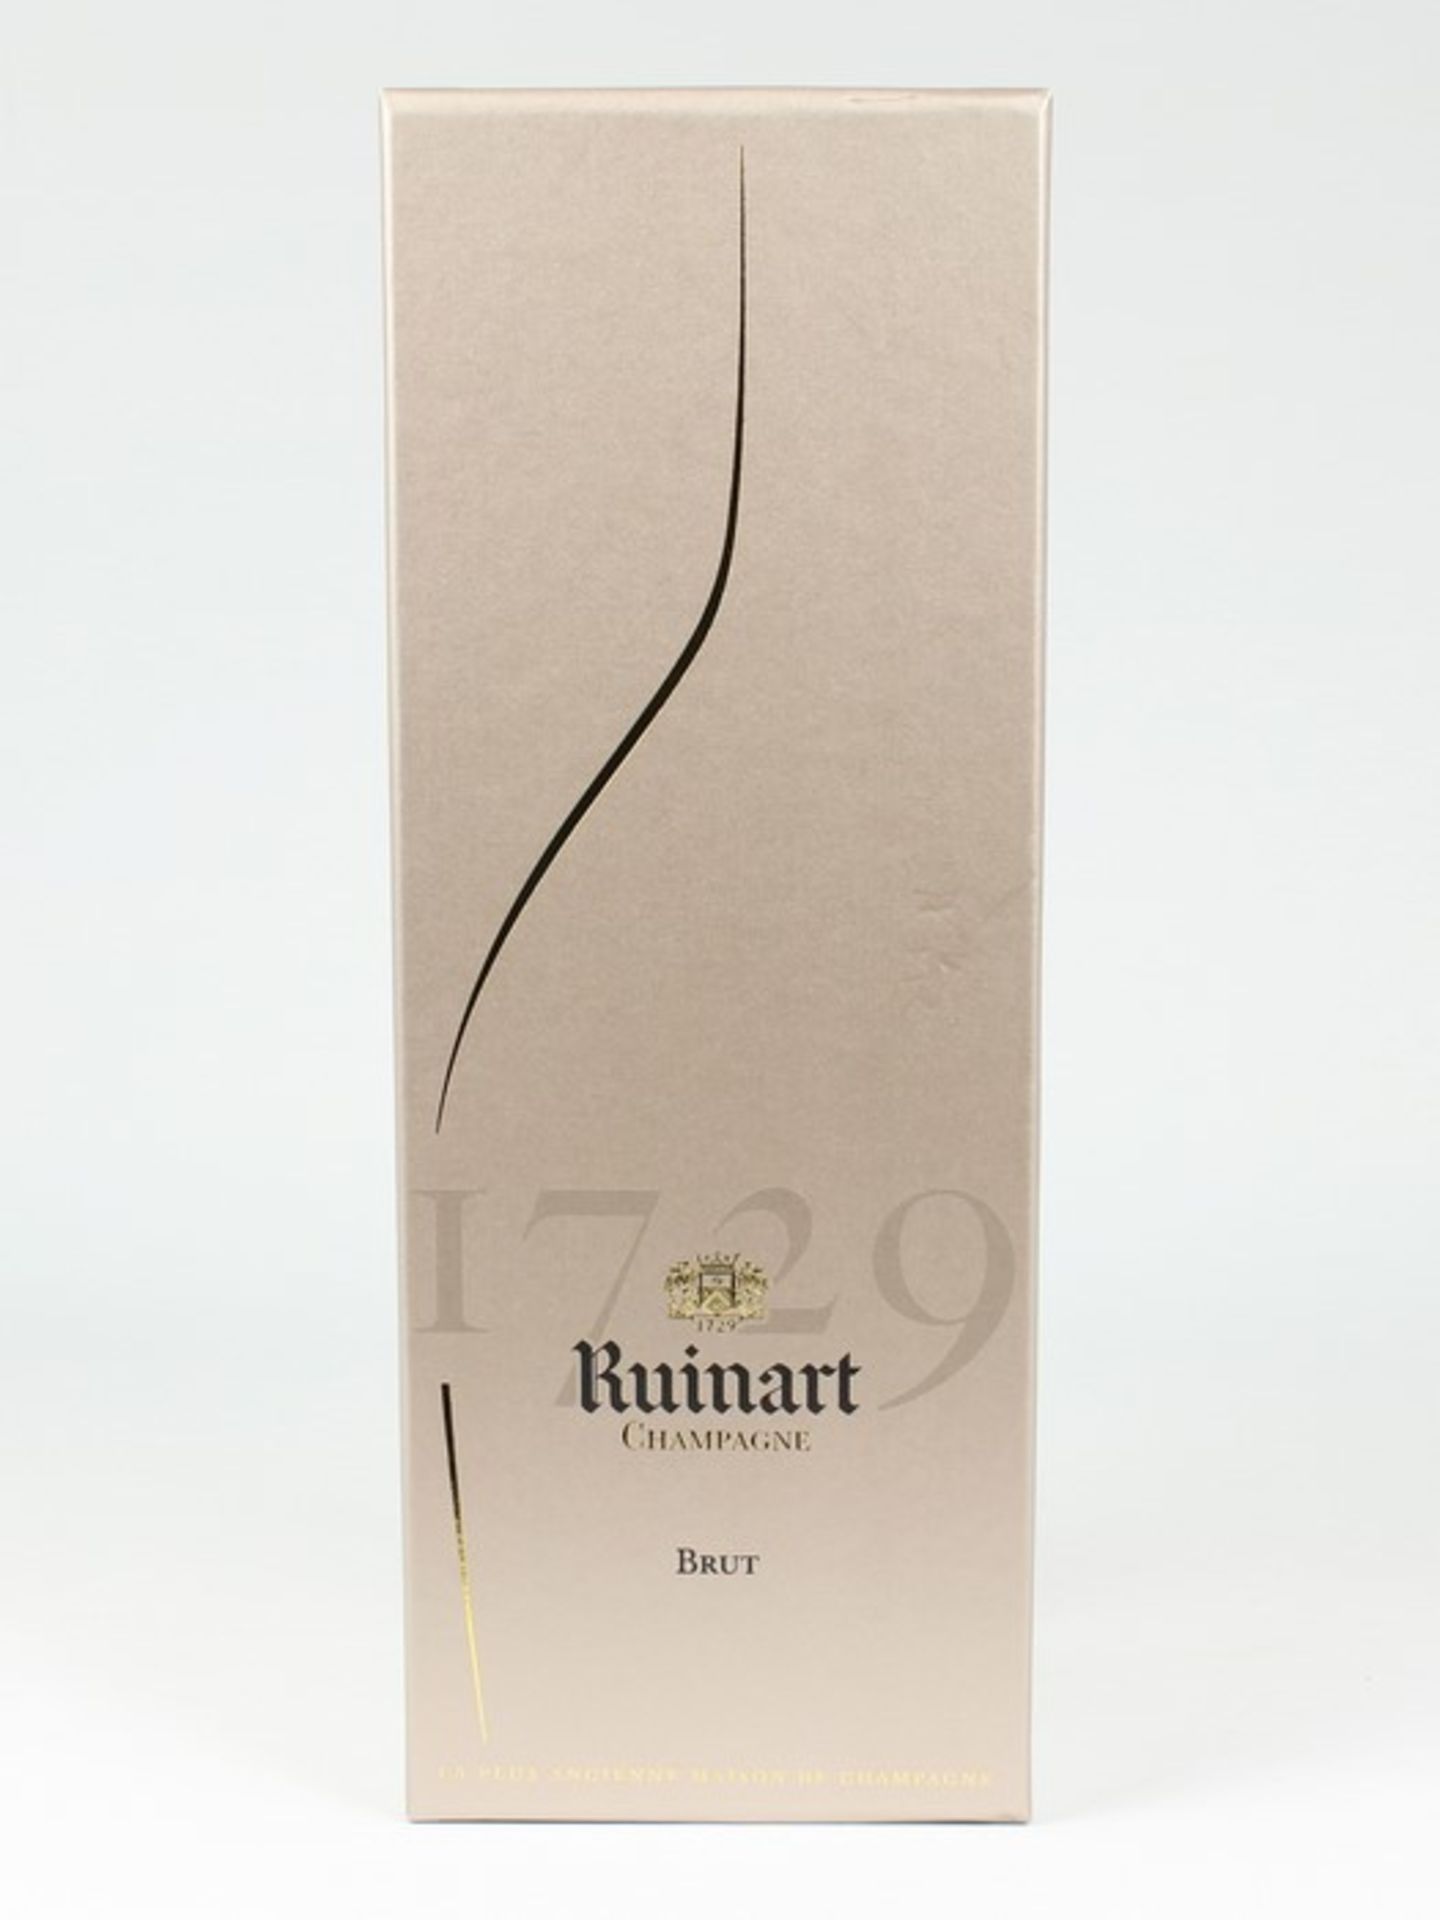 Champagner - RuinartFrankreich, Reims, Brut, 750 ml, 12 % vol., in Originalgeschenkbox